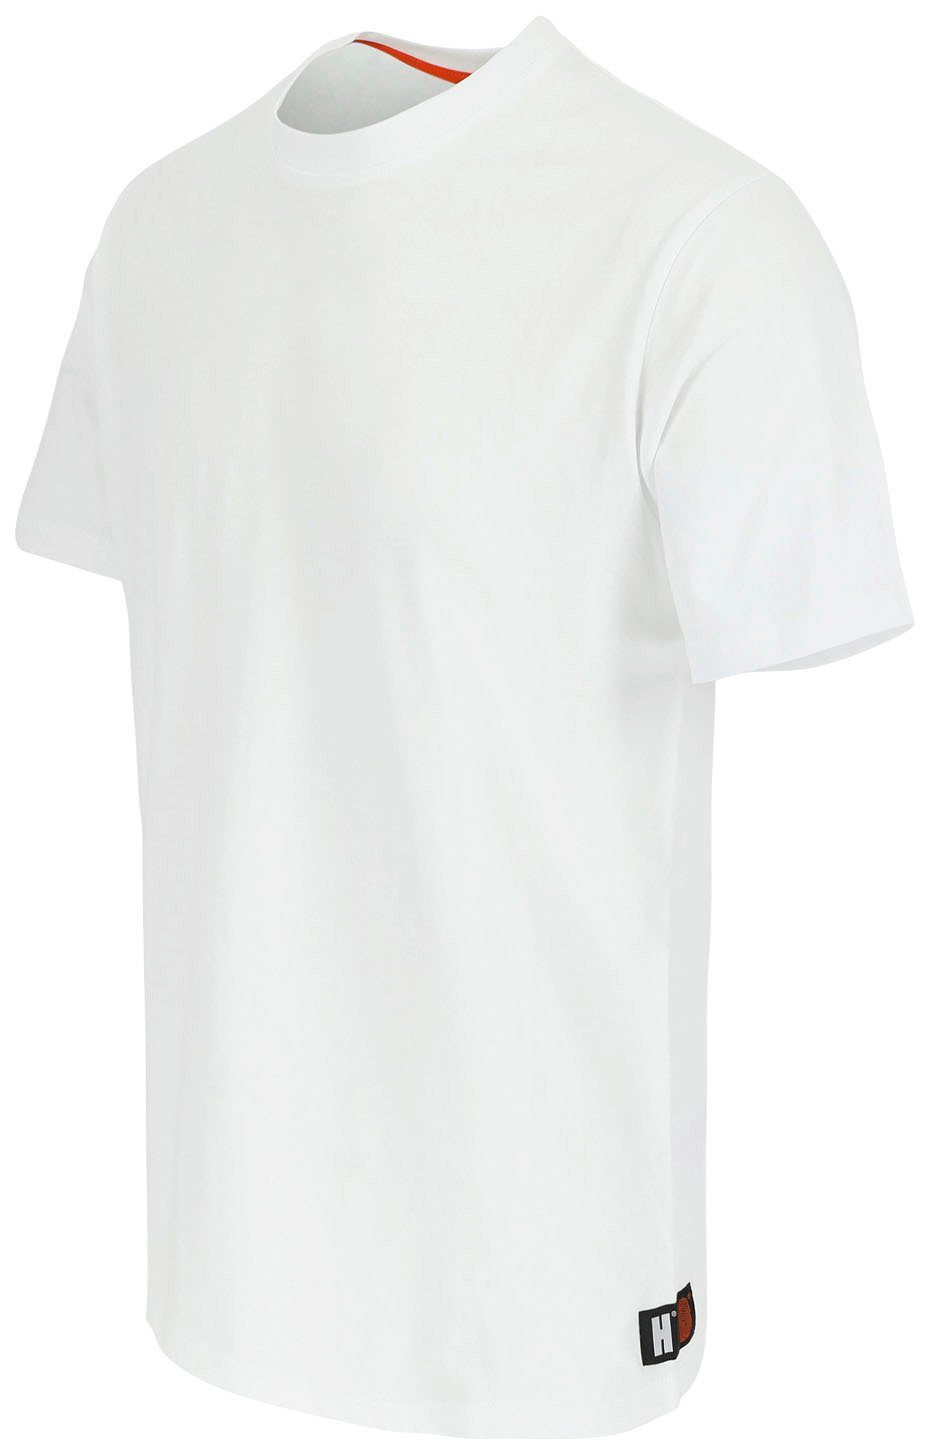 Herock T-Shirt Callius T-Shirt Rundhalsausschnitt, Rippstrickkragen Ärmel, Ärmel kurze Herock®-Aufdruck, weiß kurze